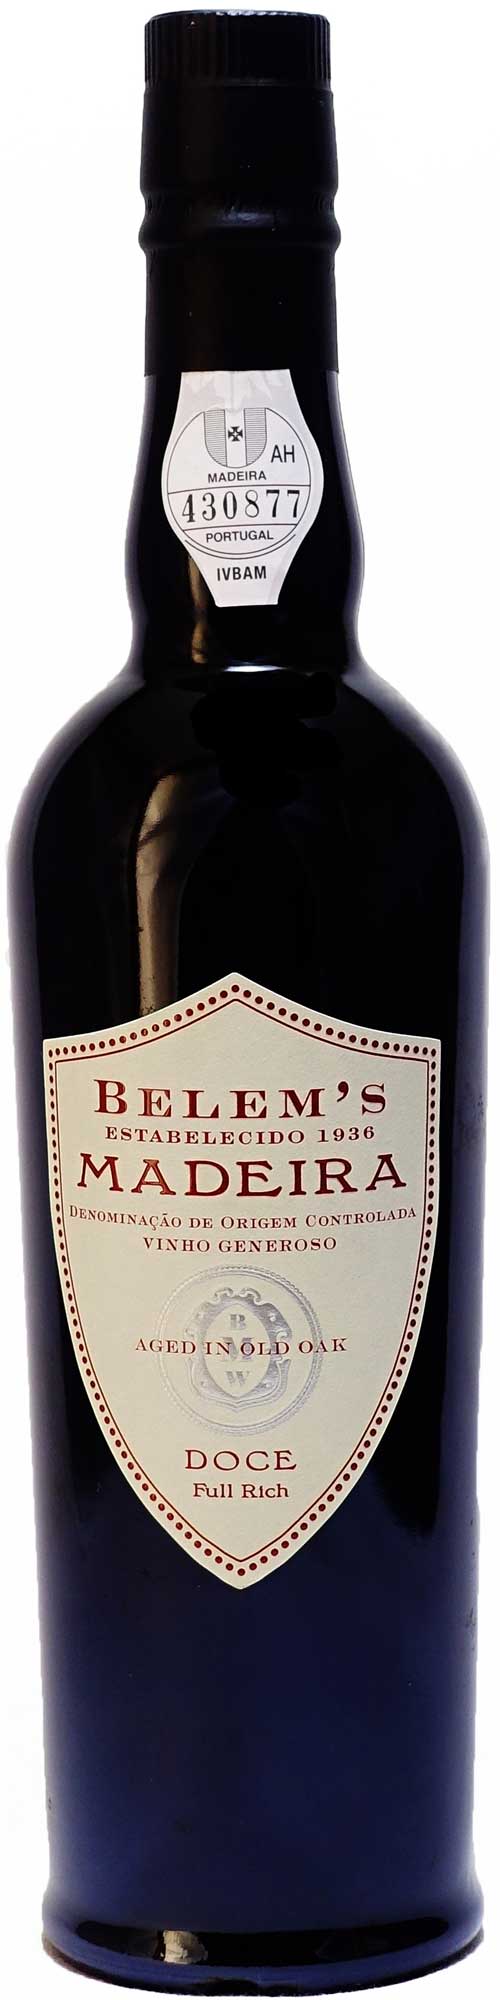 Belem's Doce Madeira Portugal